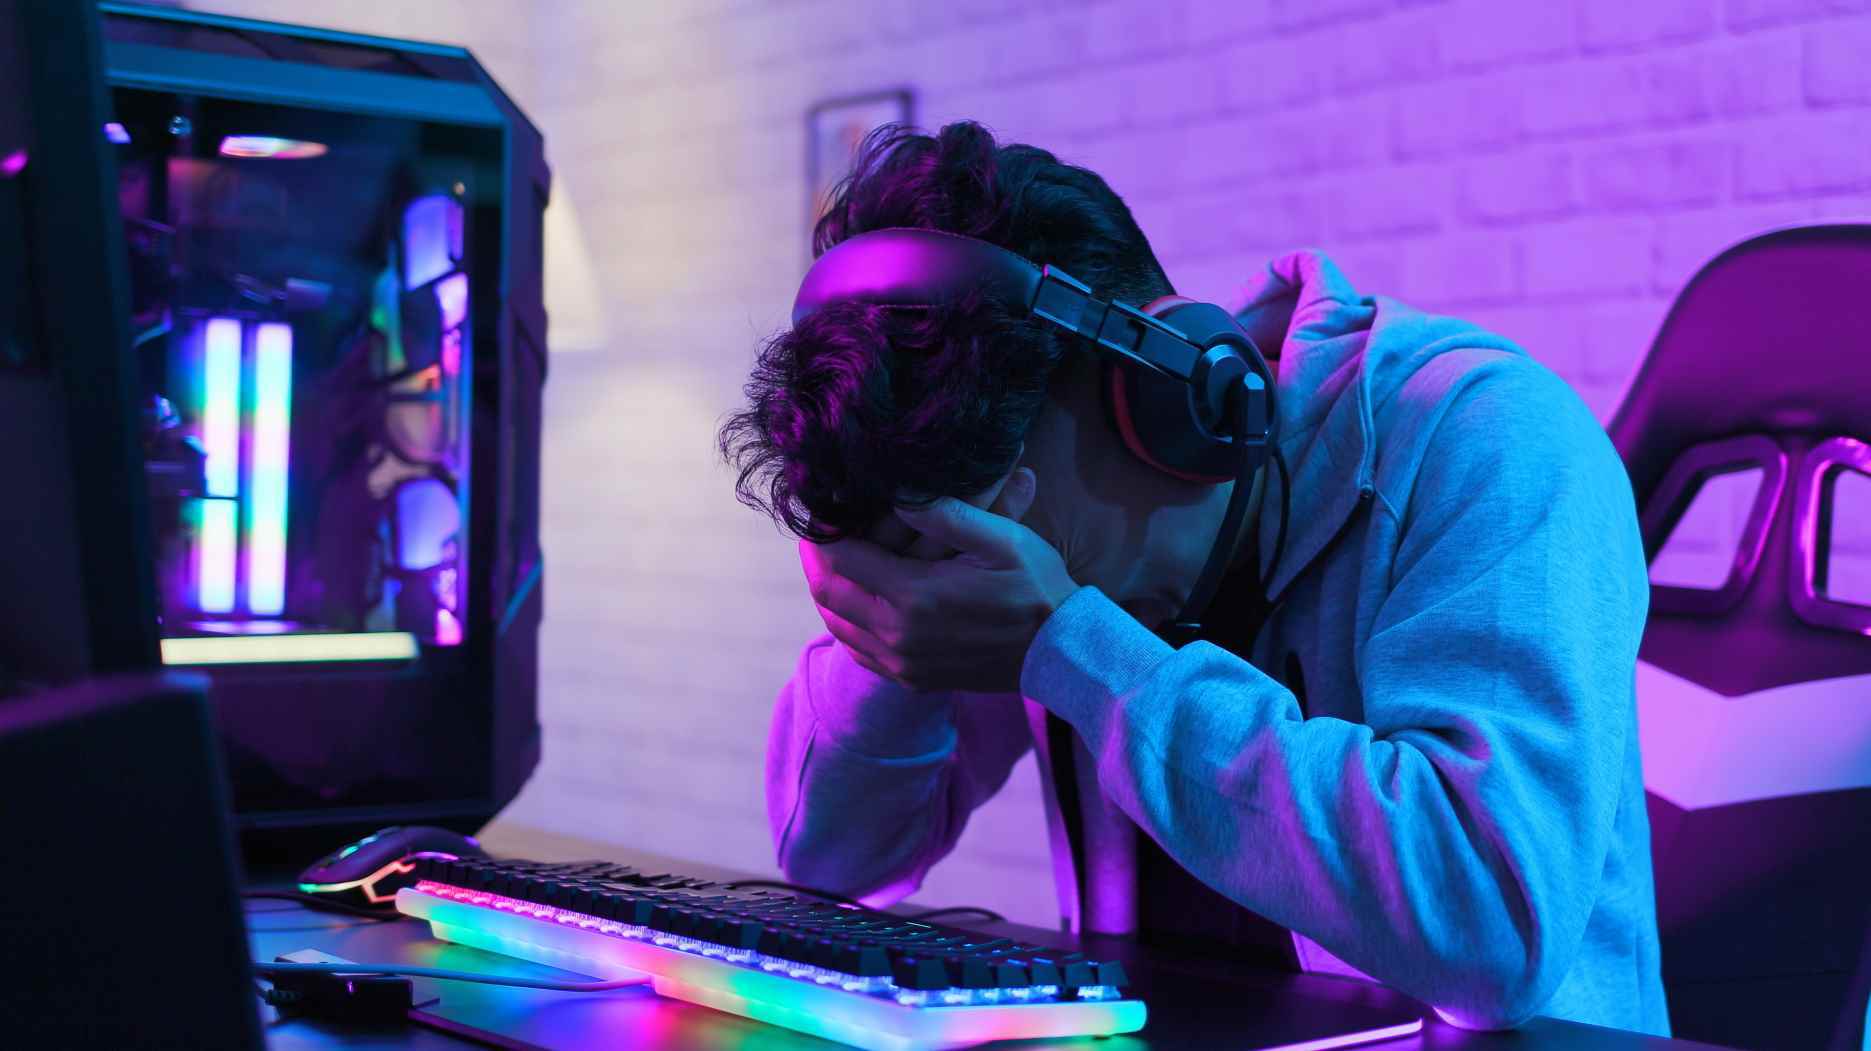 Bilgisayarının başında kafası ellerinde olan üzgün bilgisayar oyuncusu